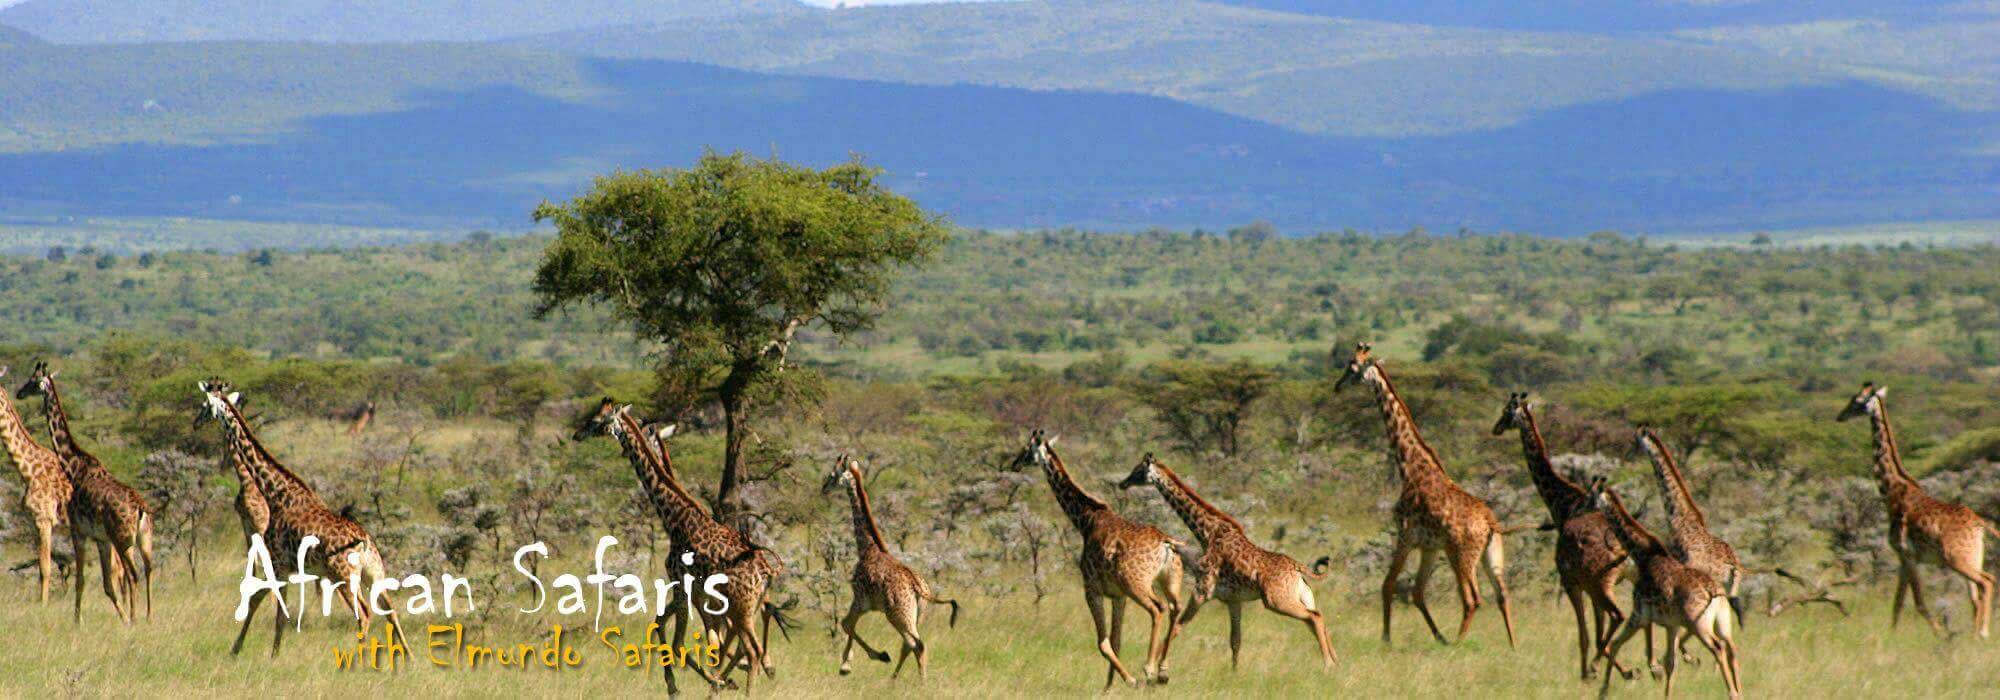 Giraffee African Safari